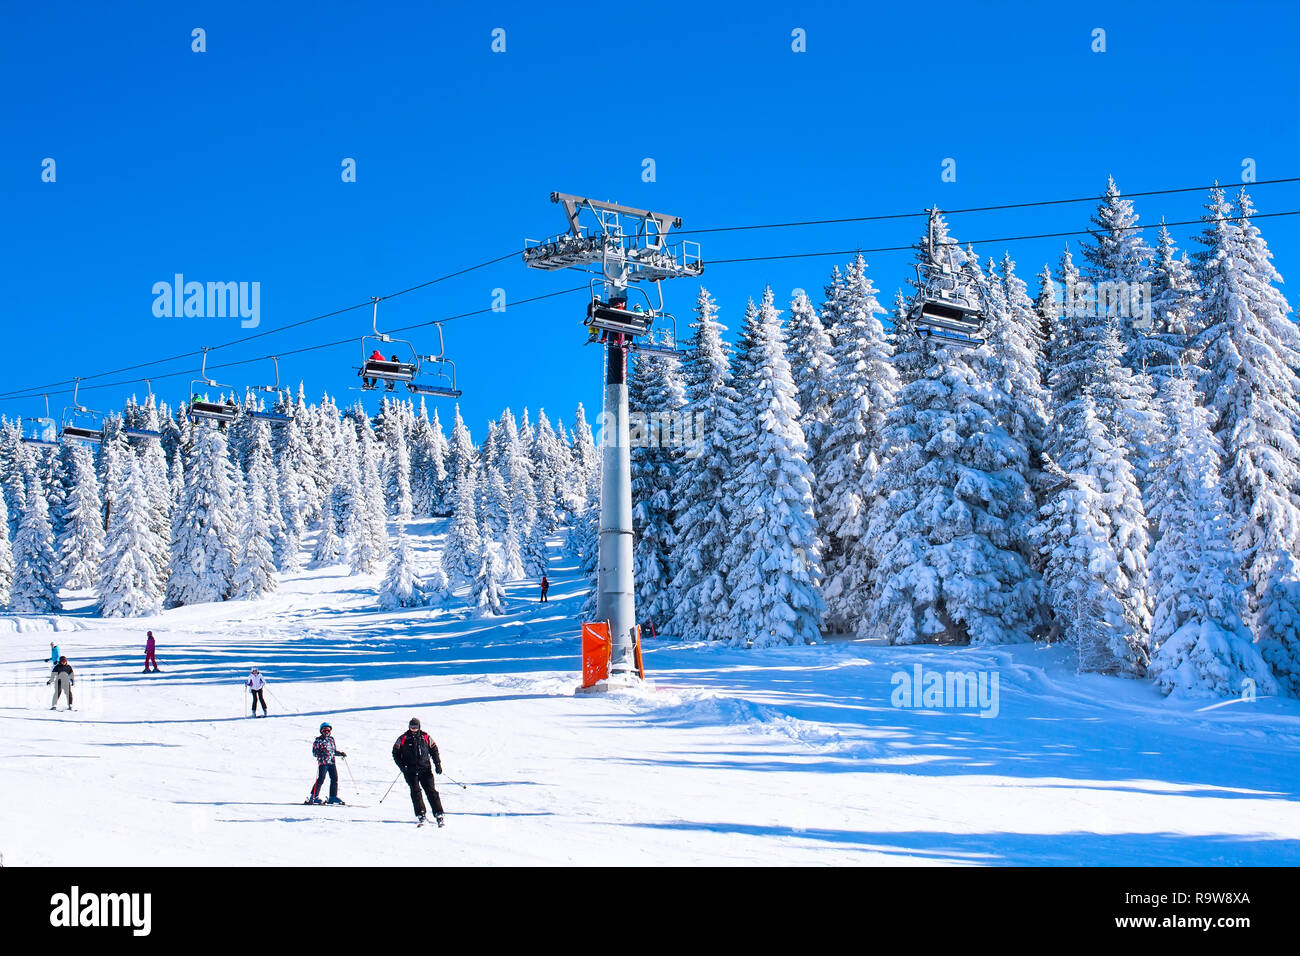 Kopaonik, Serbien - Januar 20, 2016: Skigebiet Kopaonik, Serbien, Skipiste, Menschen auf der Skilift, Skifahrer und Snowboarder auf der Piste Stockfoto